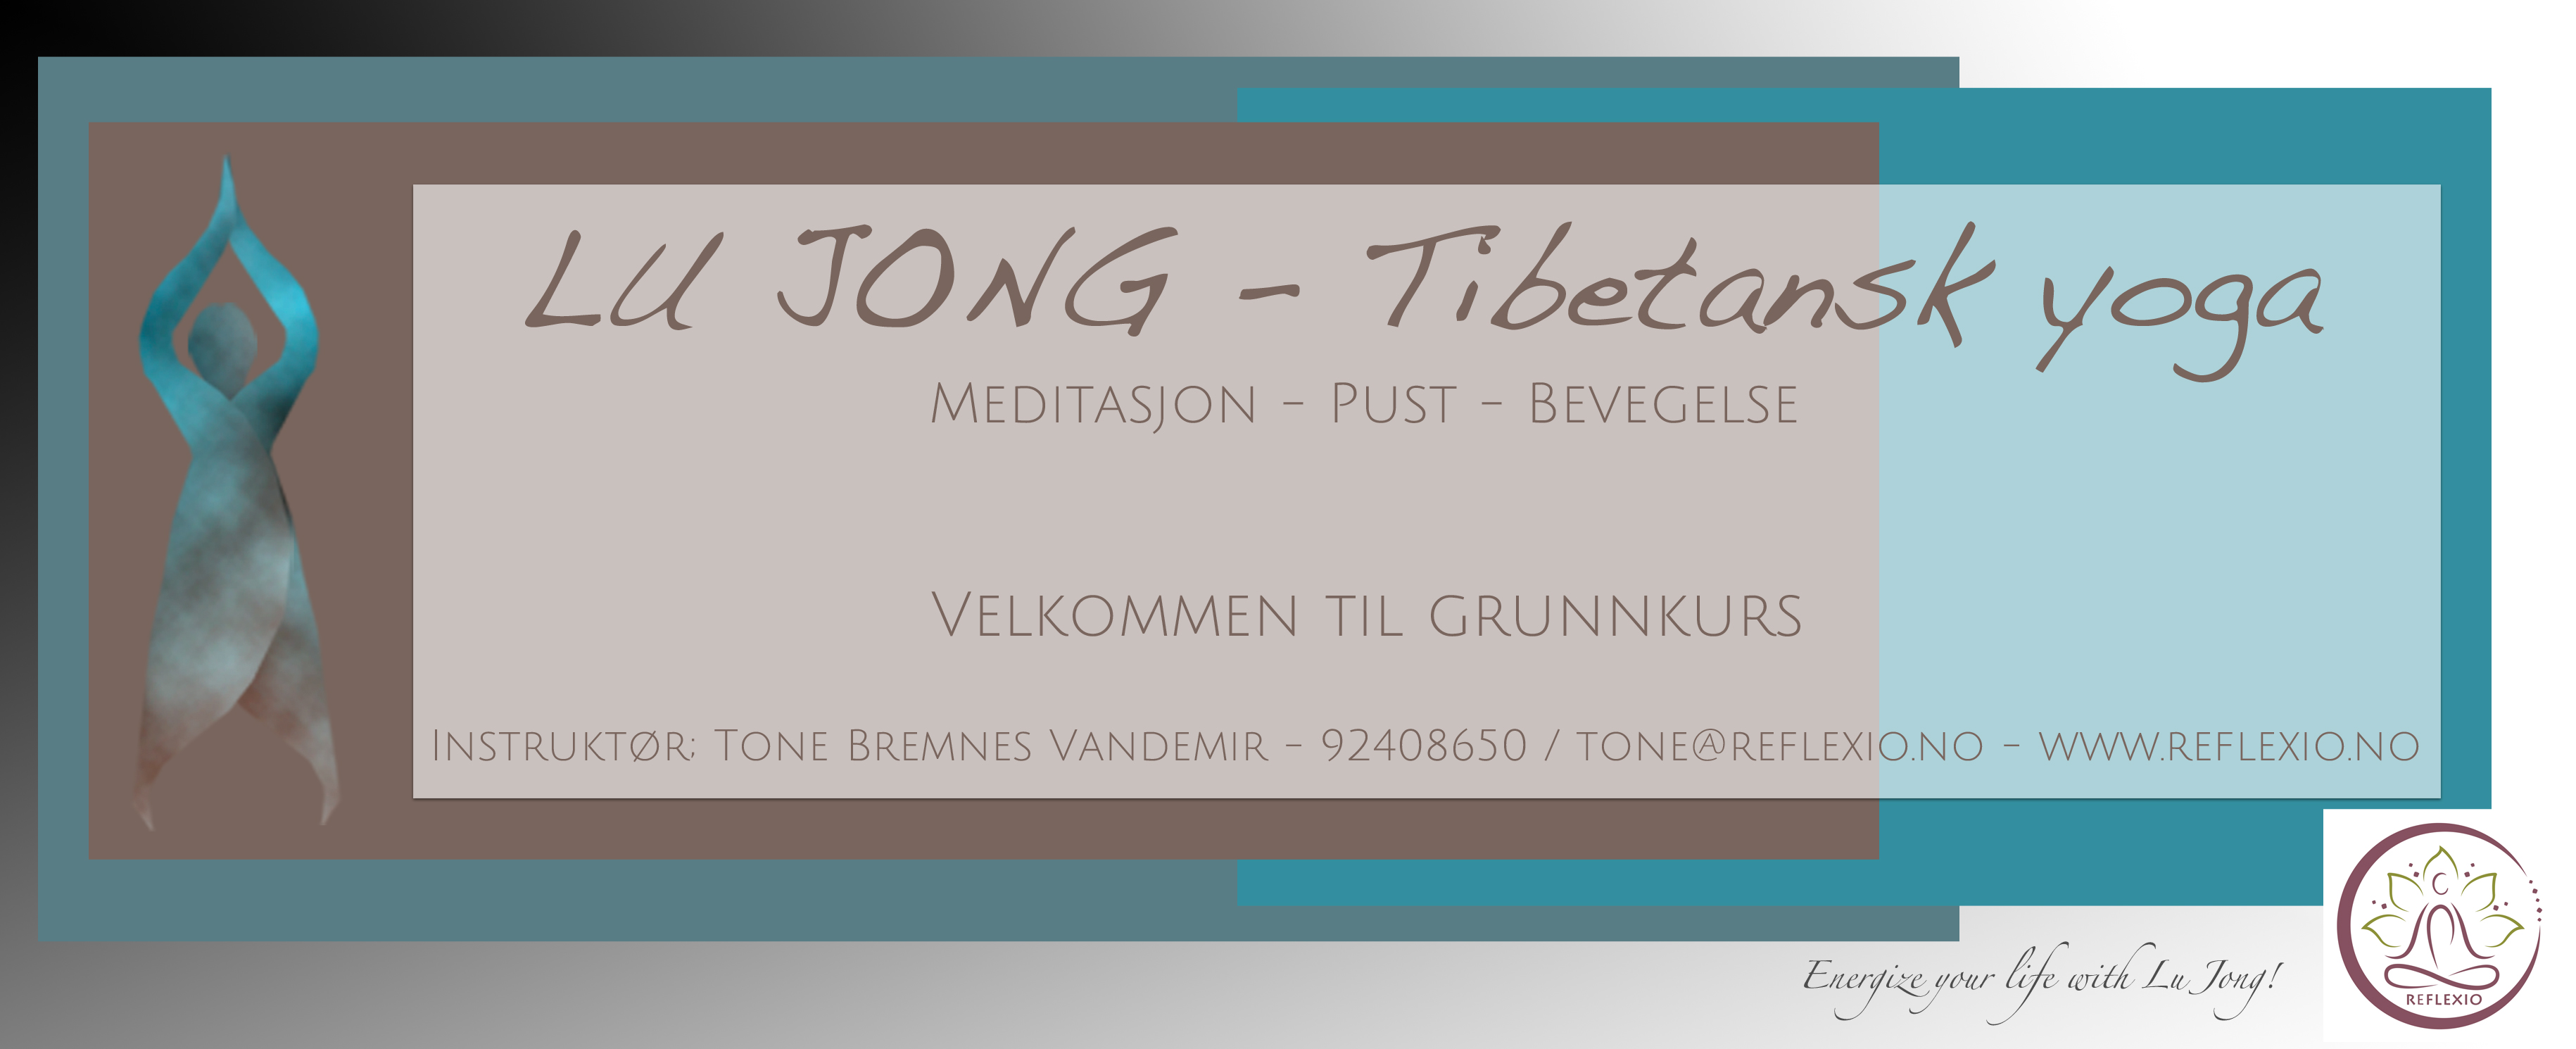 Grunnkurs i Lu Jong – Tibetansk yoga